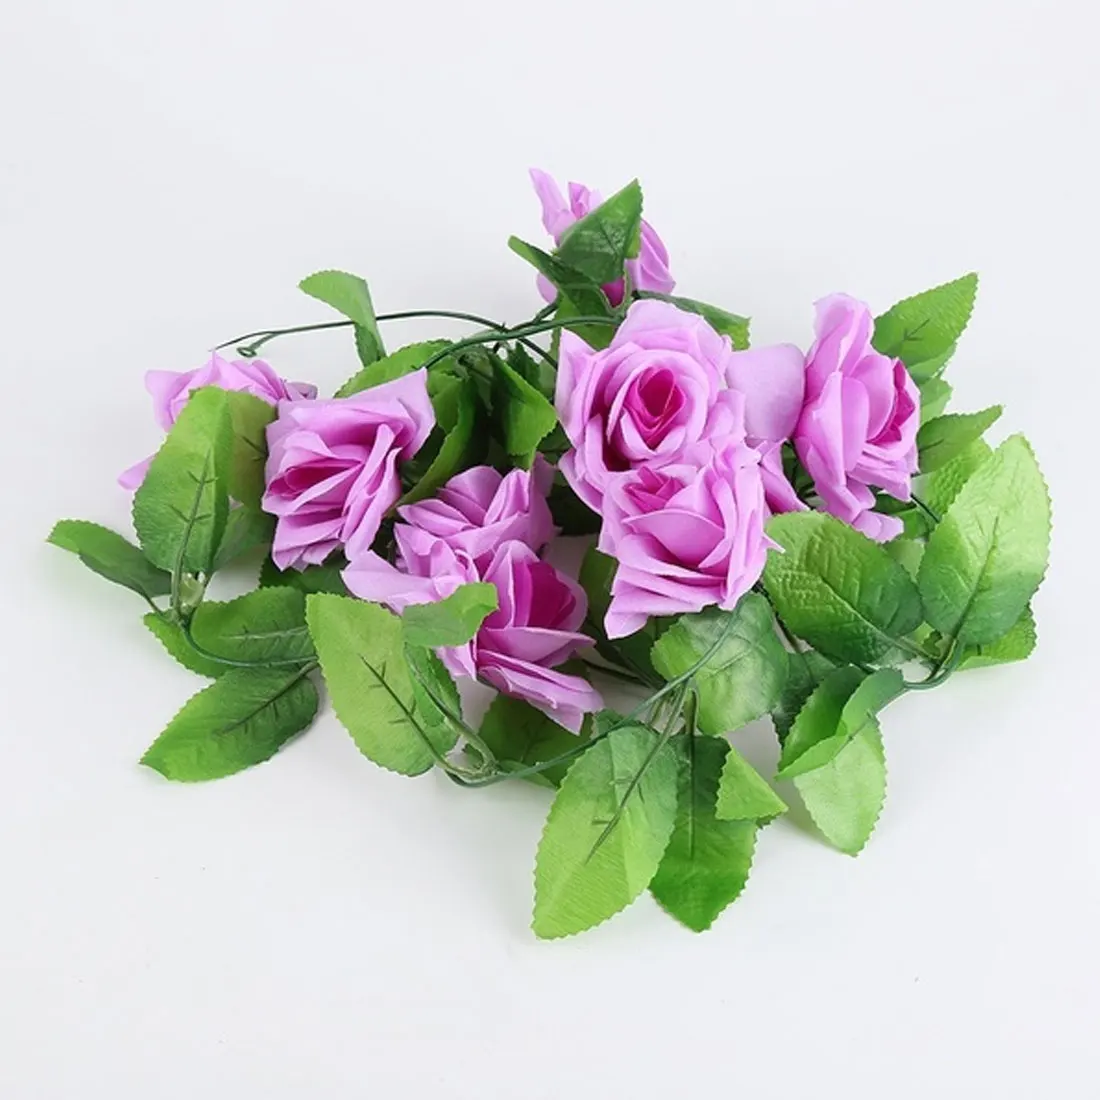 230 см шелк искусственный плюща розы лоза цветы лоза с зелеными листьями для дома Свадебные украшения поддельные листья diy висячая гирлянда